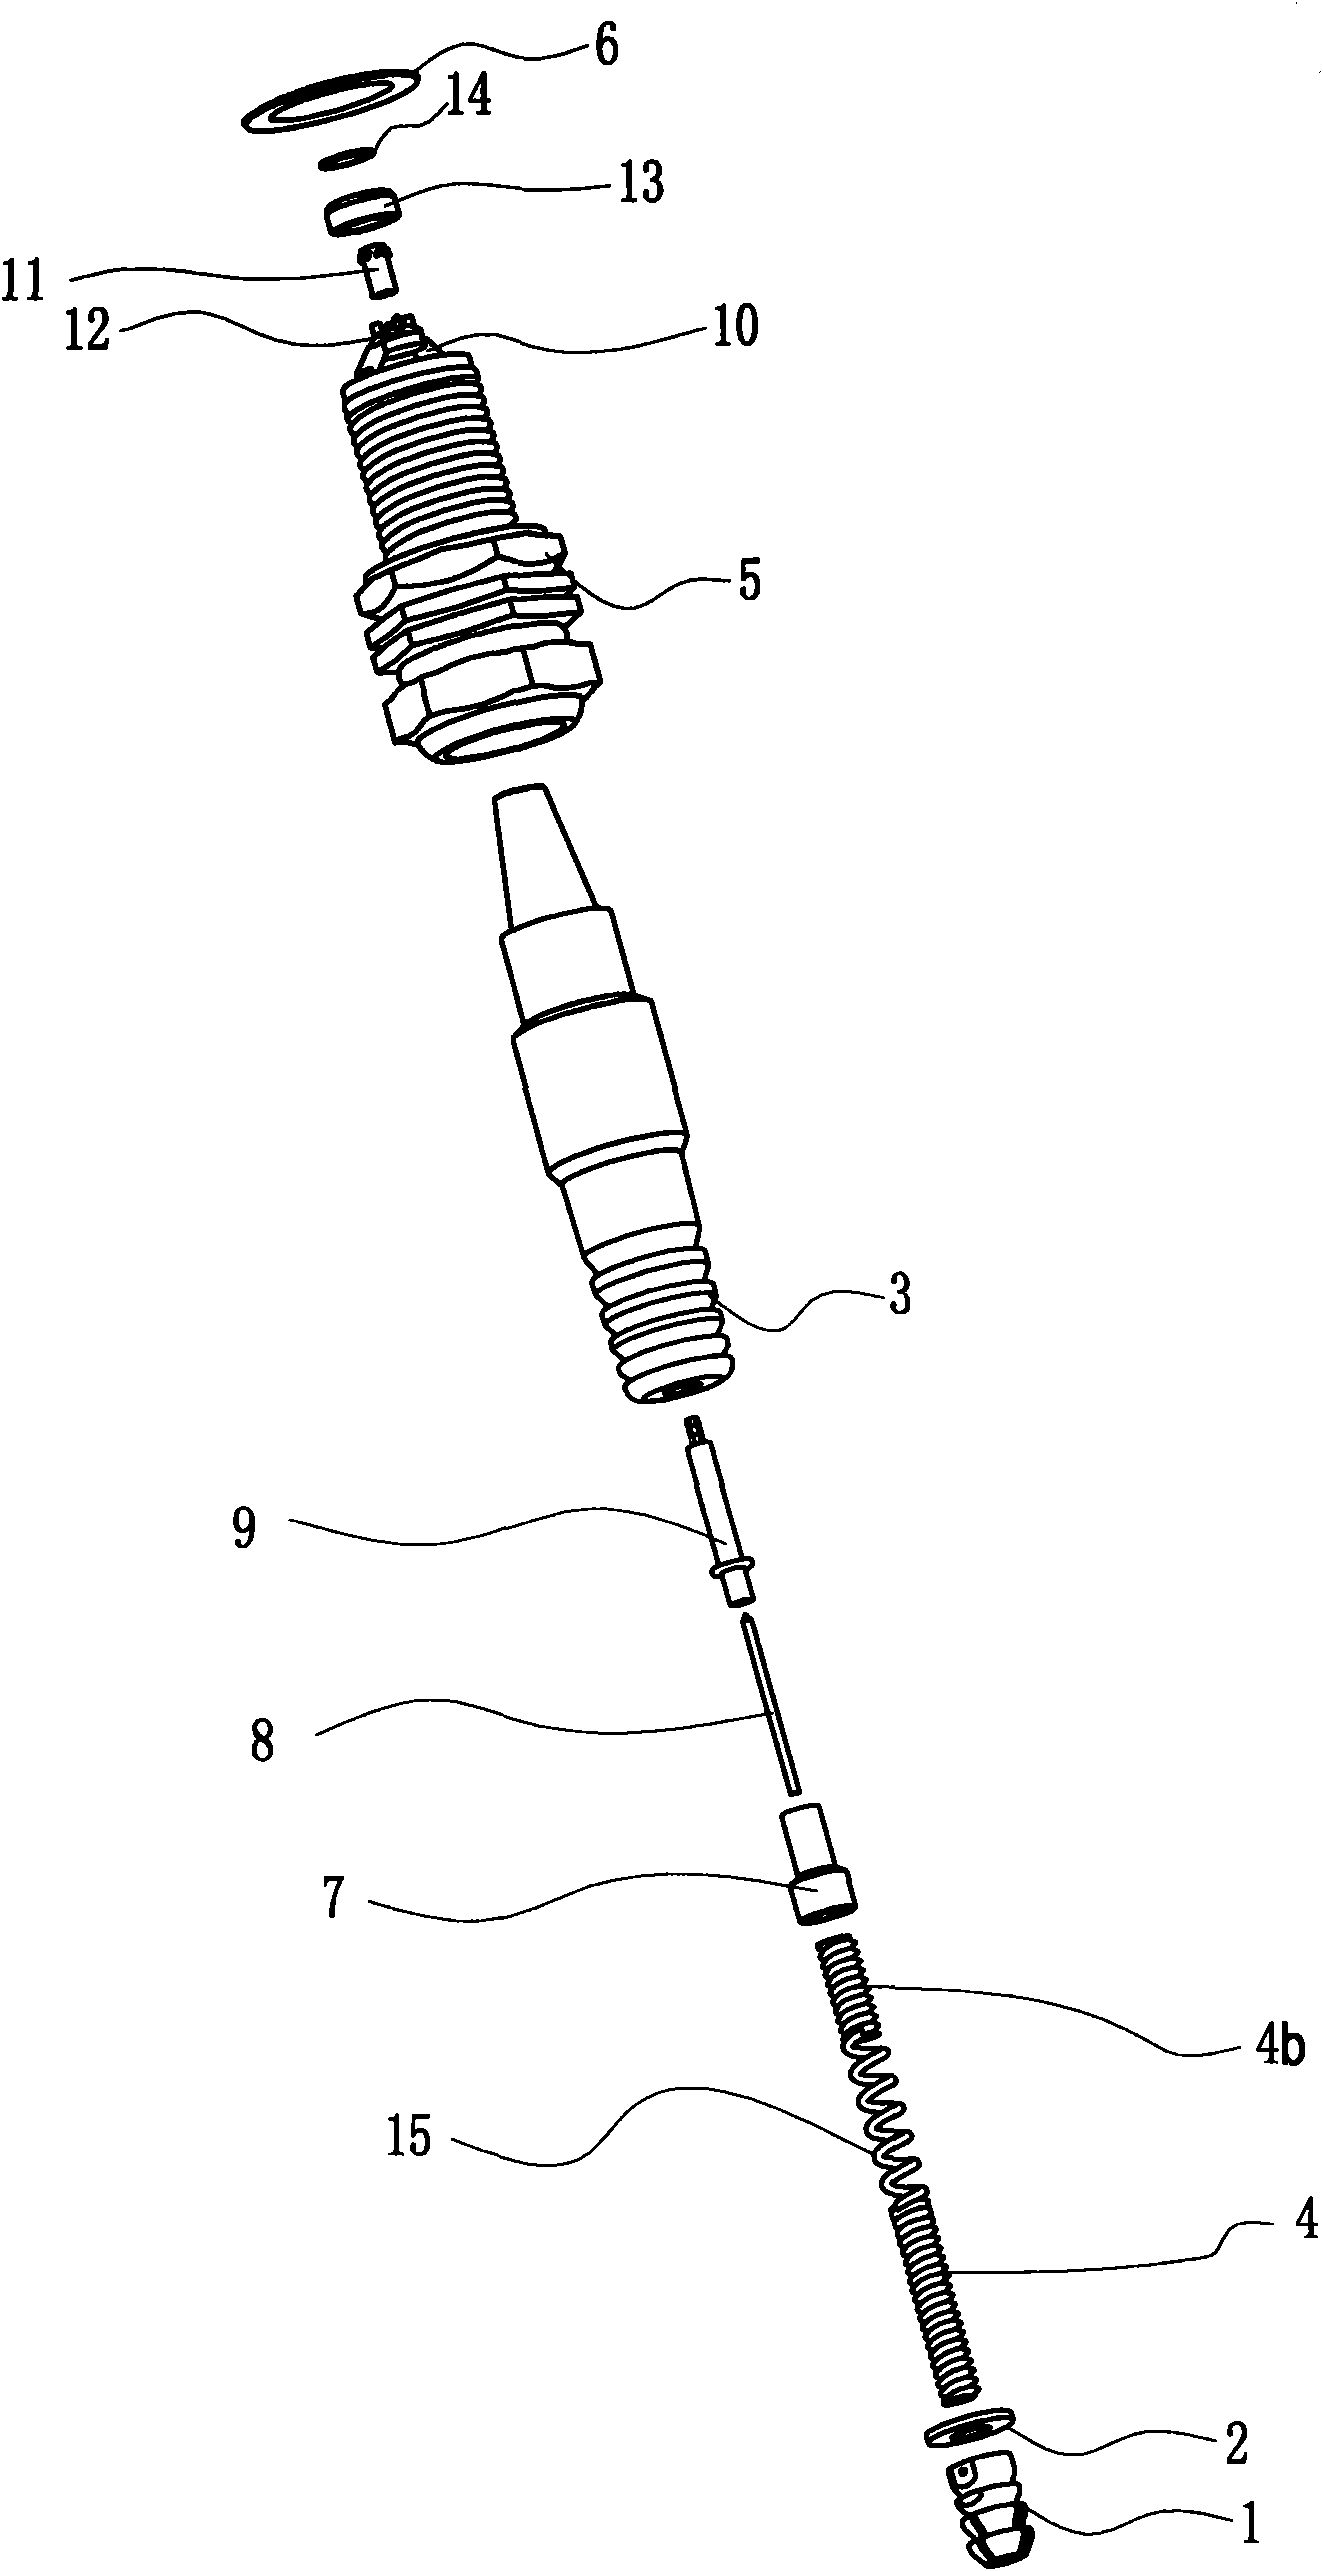 Gasoline motor spark plug with radiation fins and cranked electrode